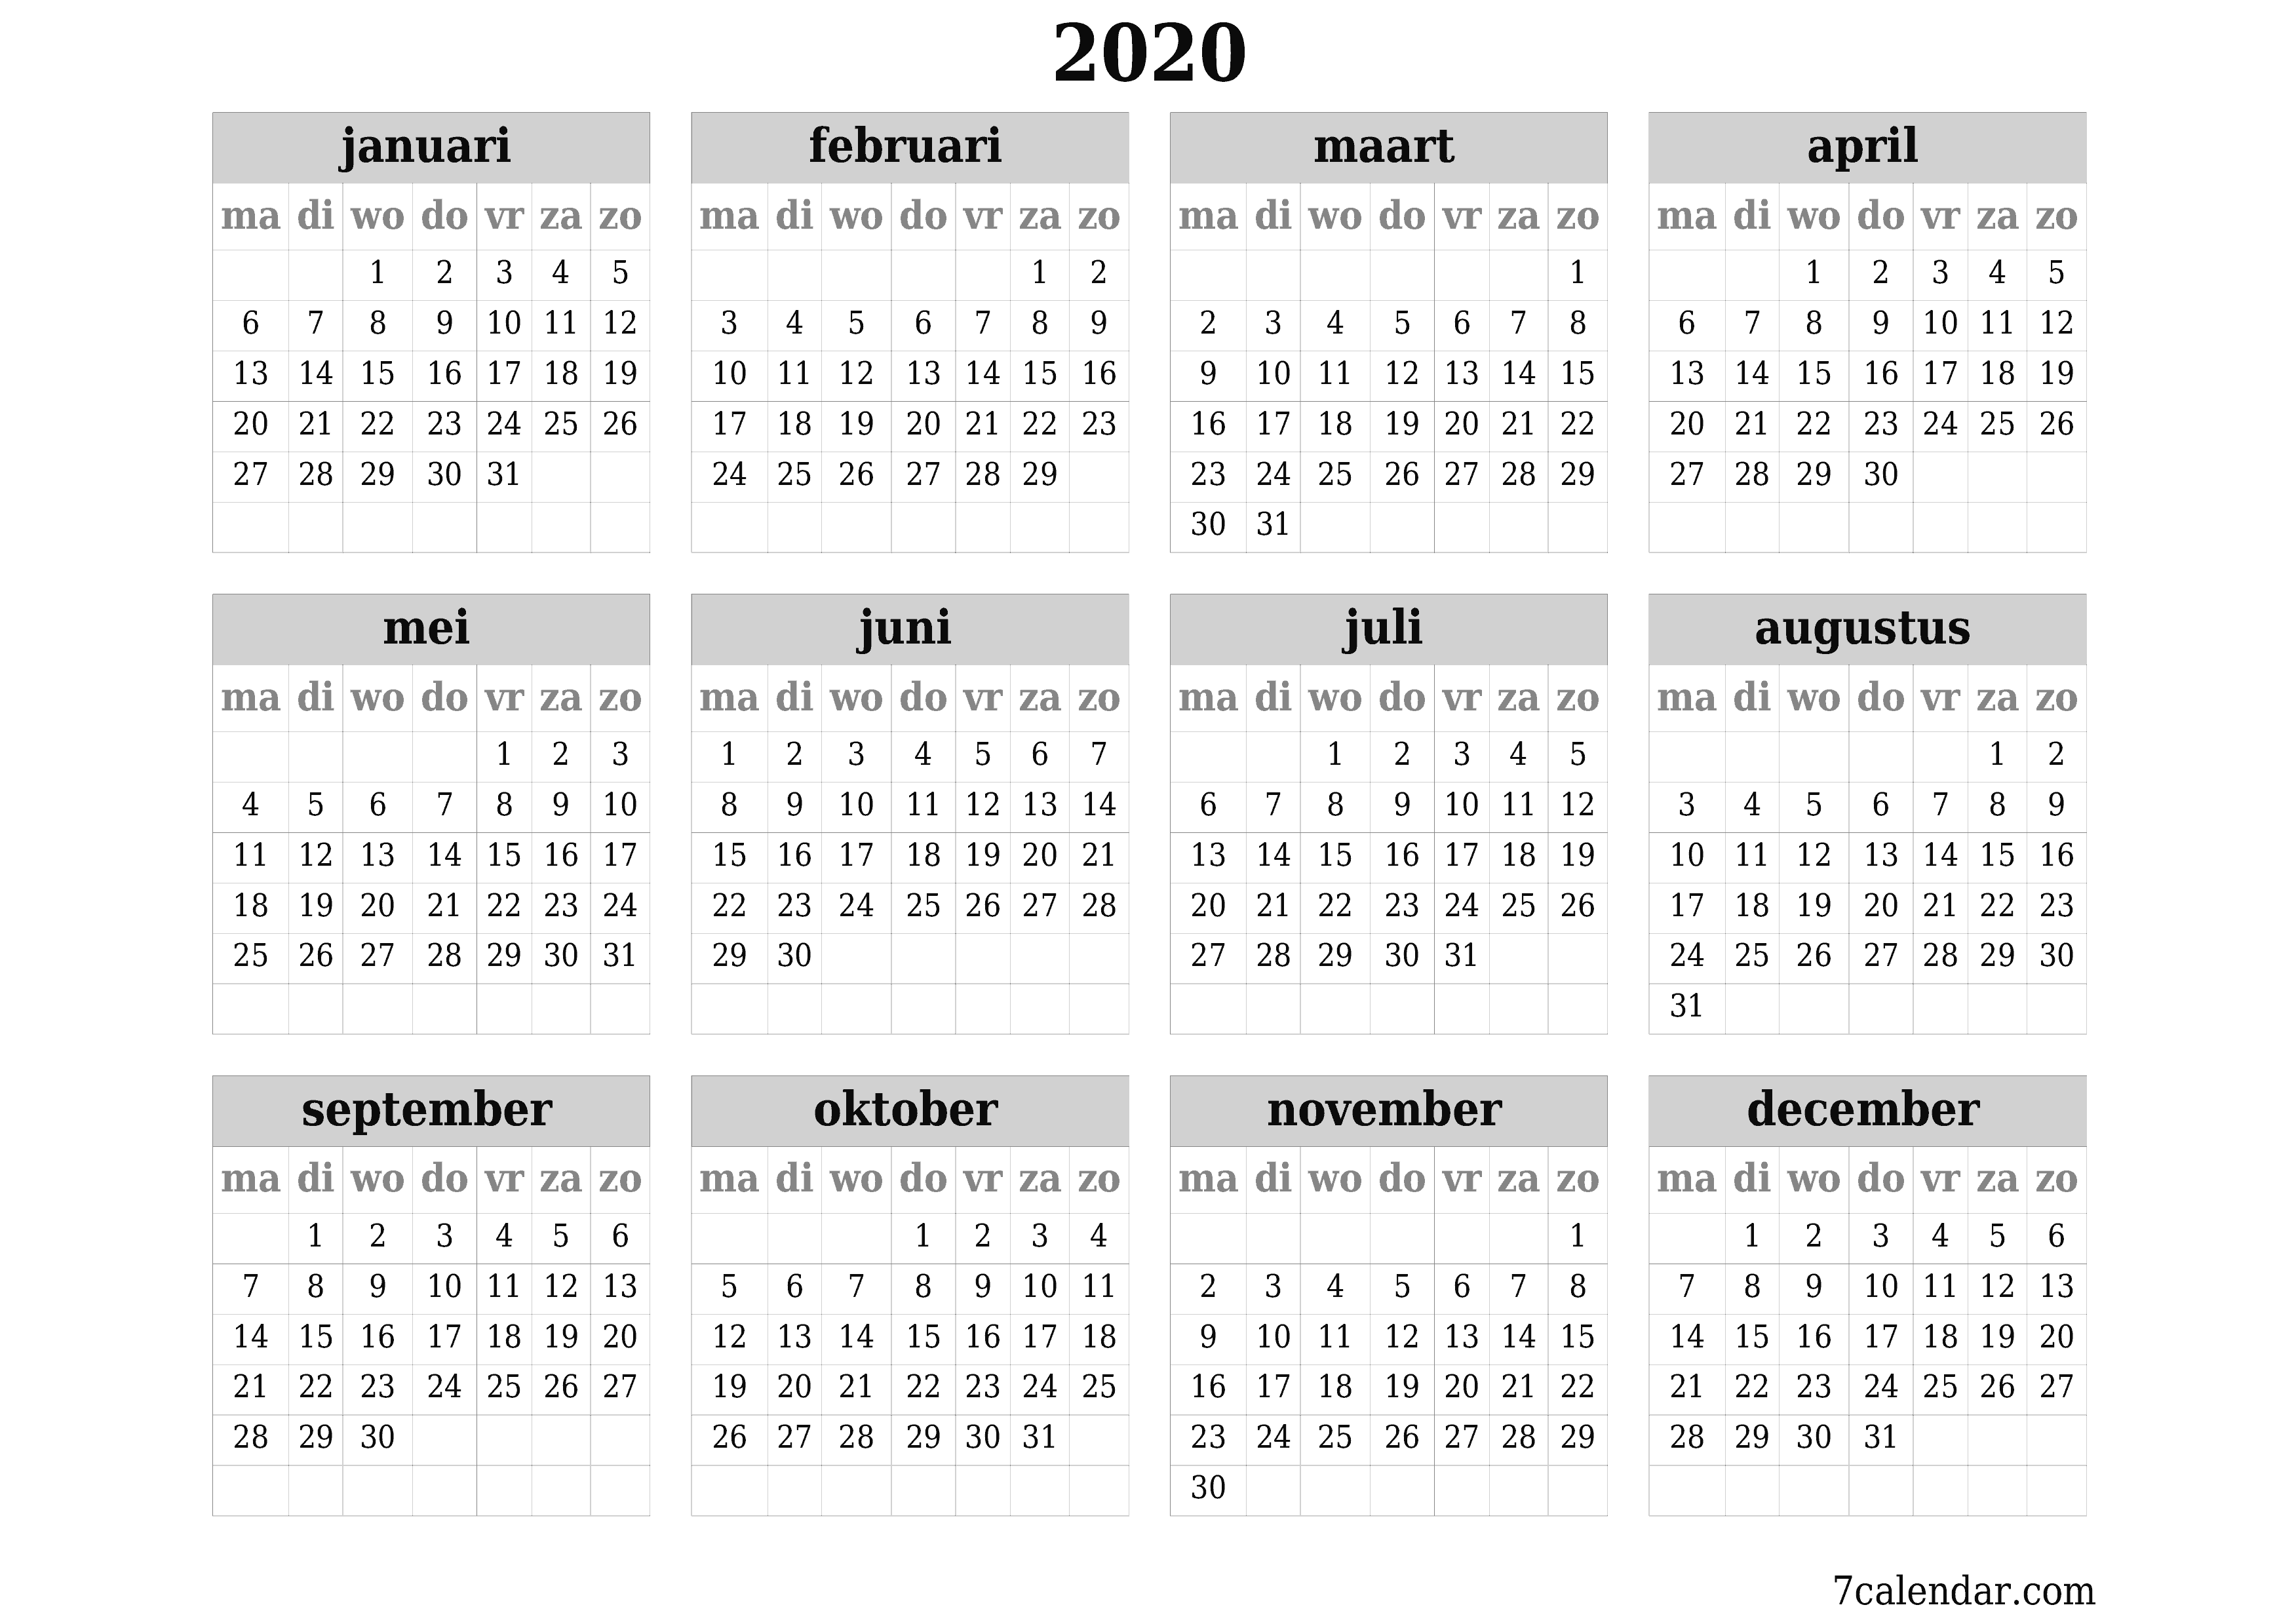 Lege jaarplanningskalender voor het jaar 2020 met notities, opslaan en afdrukken naar pdf PNG Dutch